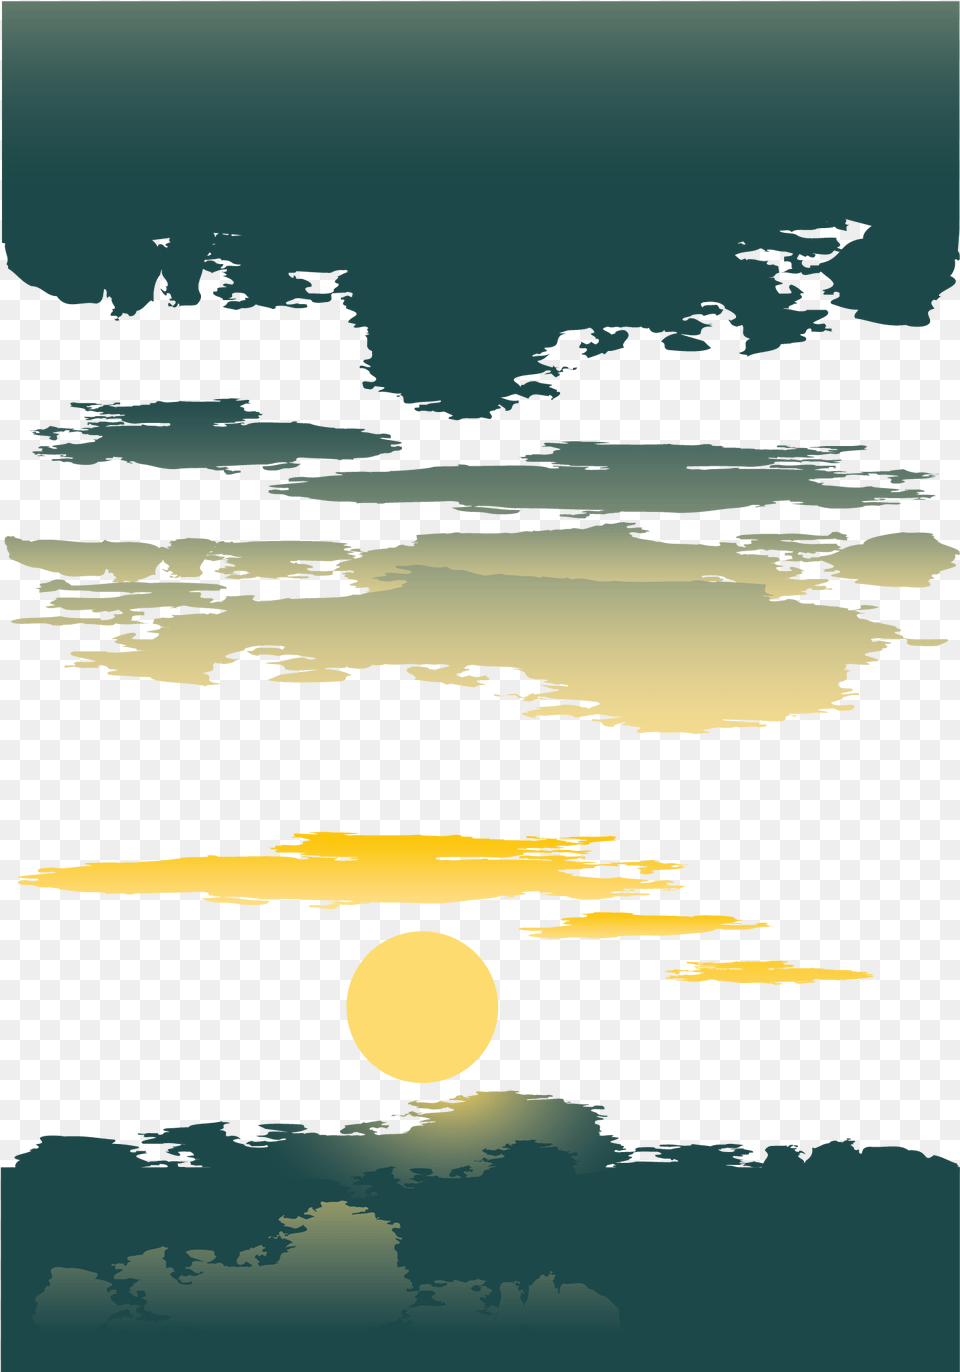 Transprent Cloud Sunset Vector, Night, Sky, Nature, Outdoors Free Transparent Png